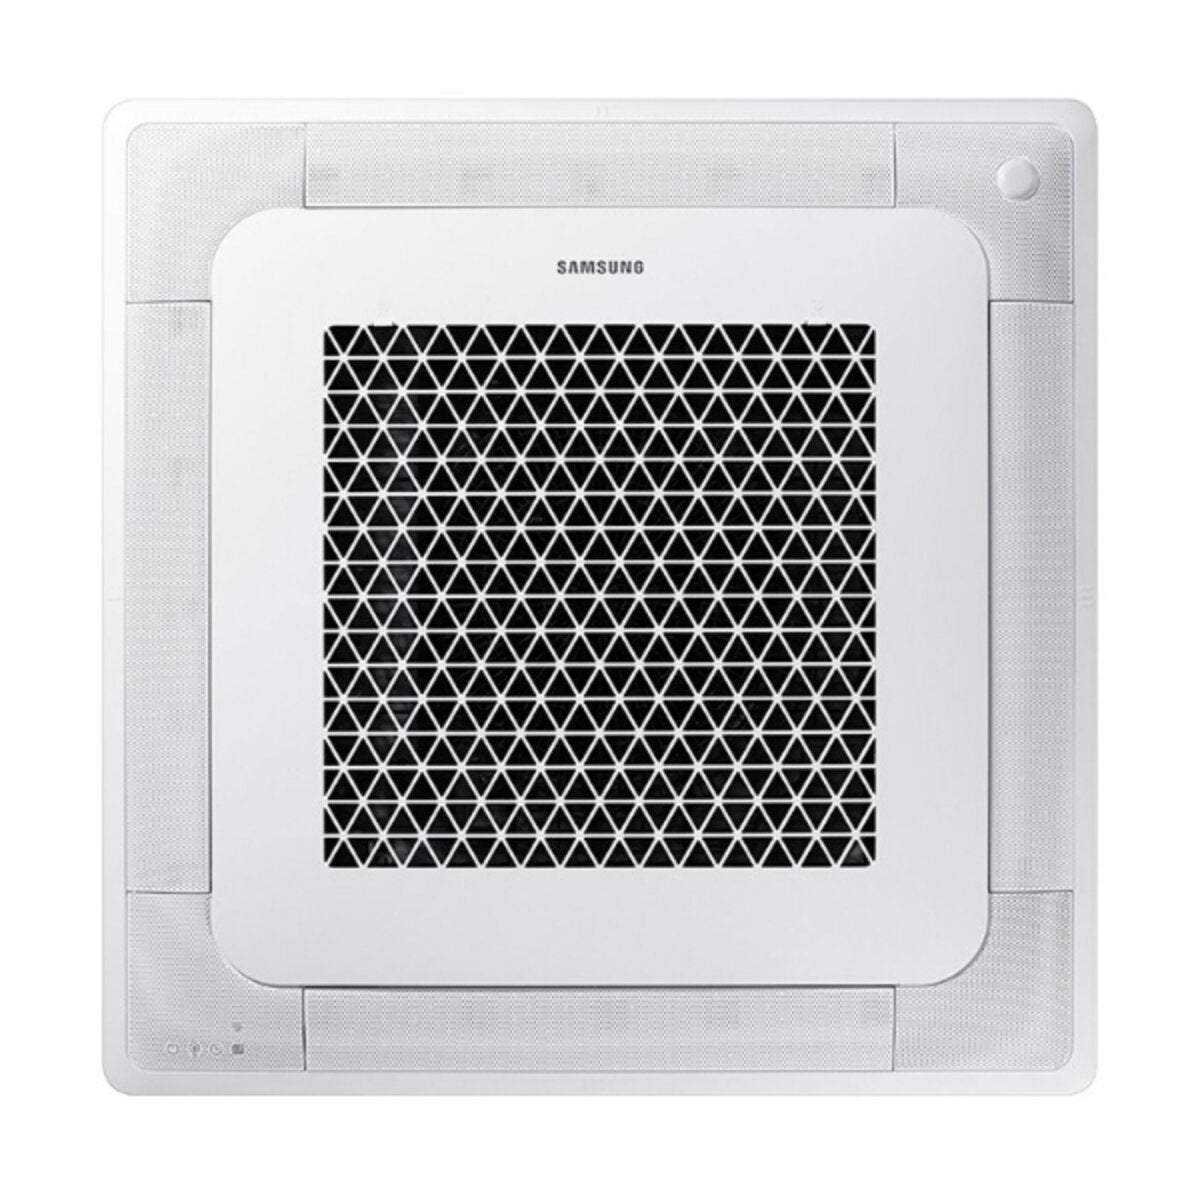 Samsung Air conditioner Windfree 4-way trial split 12000 + 12000 + 12000 BTU inverter A ++ outdoor unit 6,8 kW